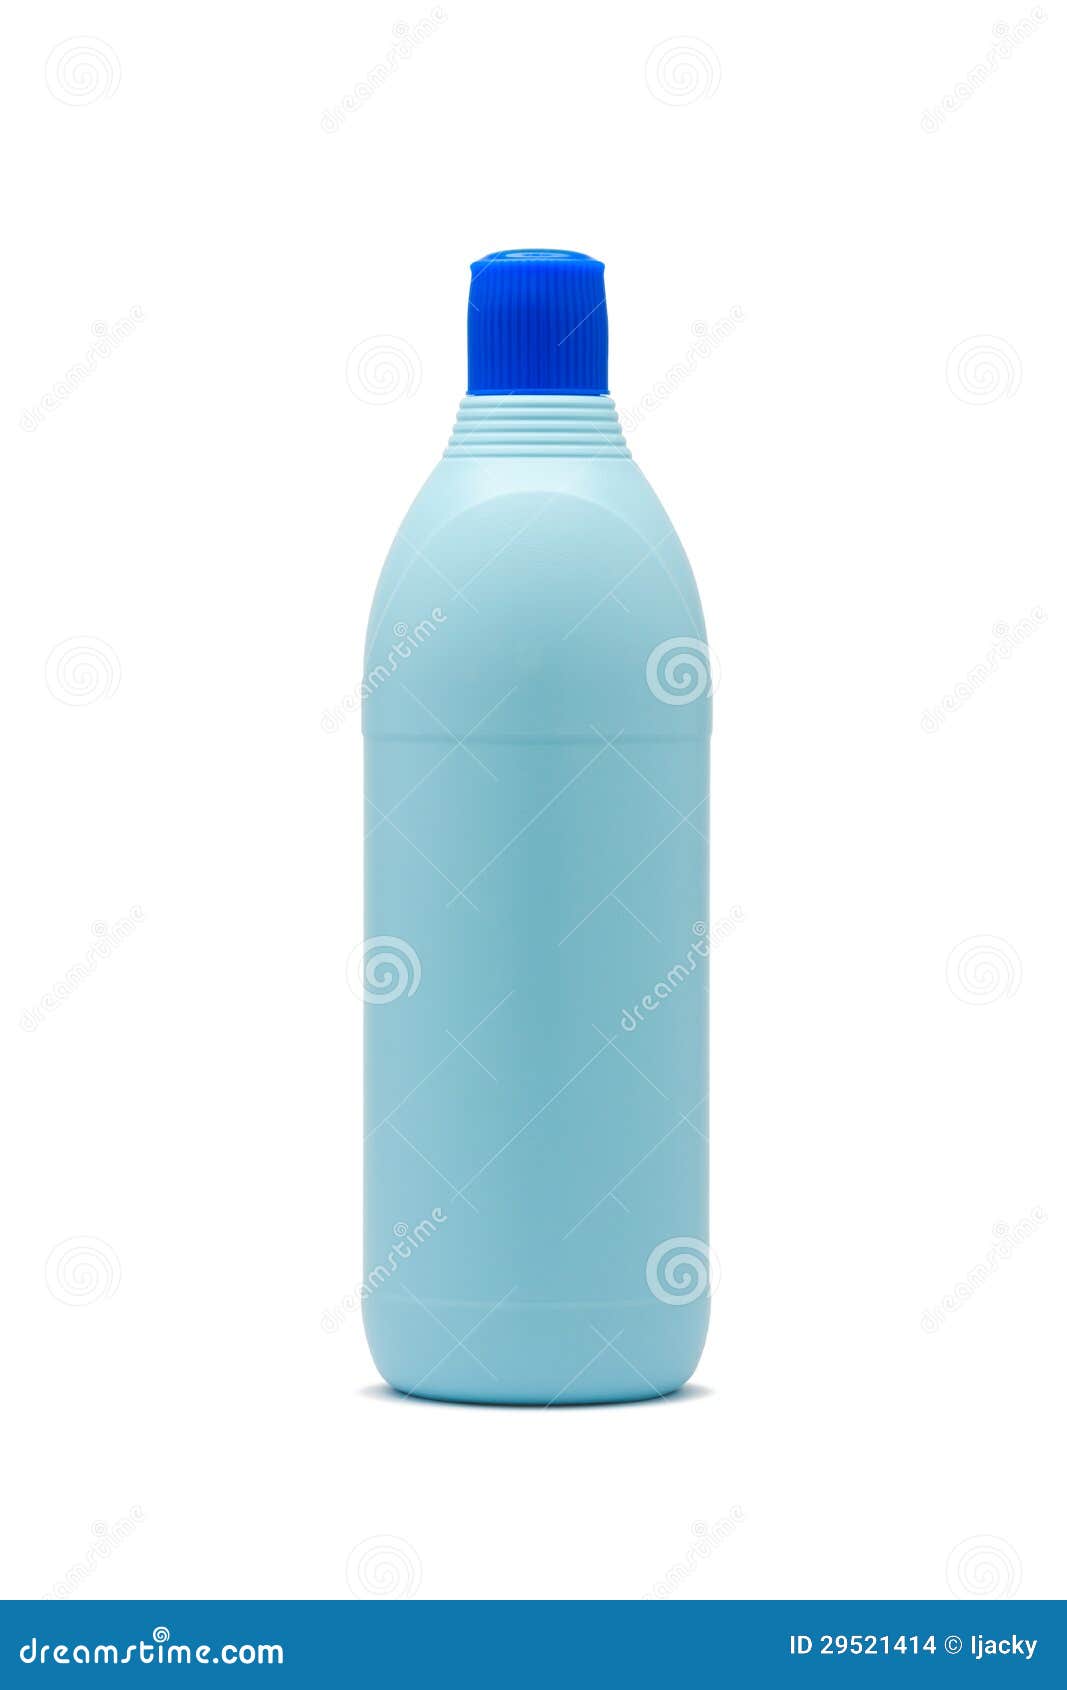 blue plastic bleach bottle